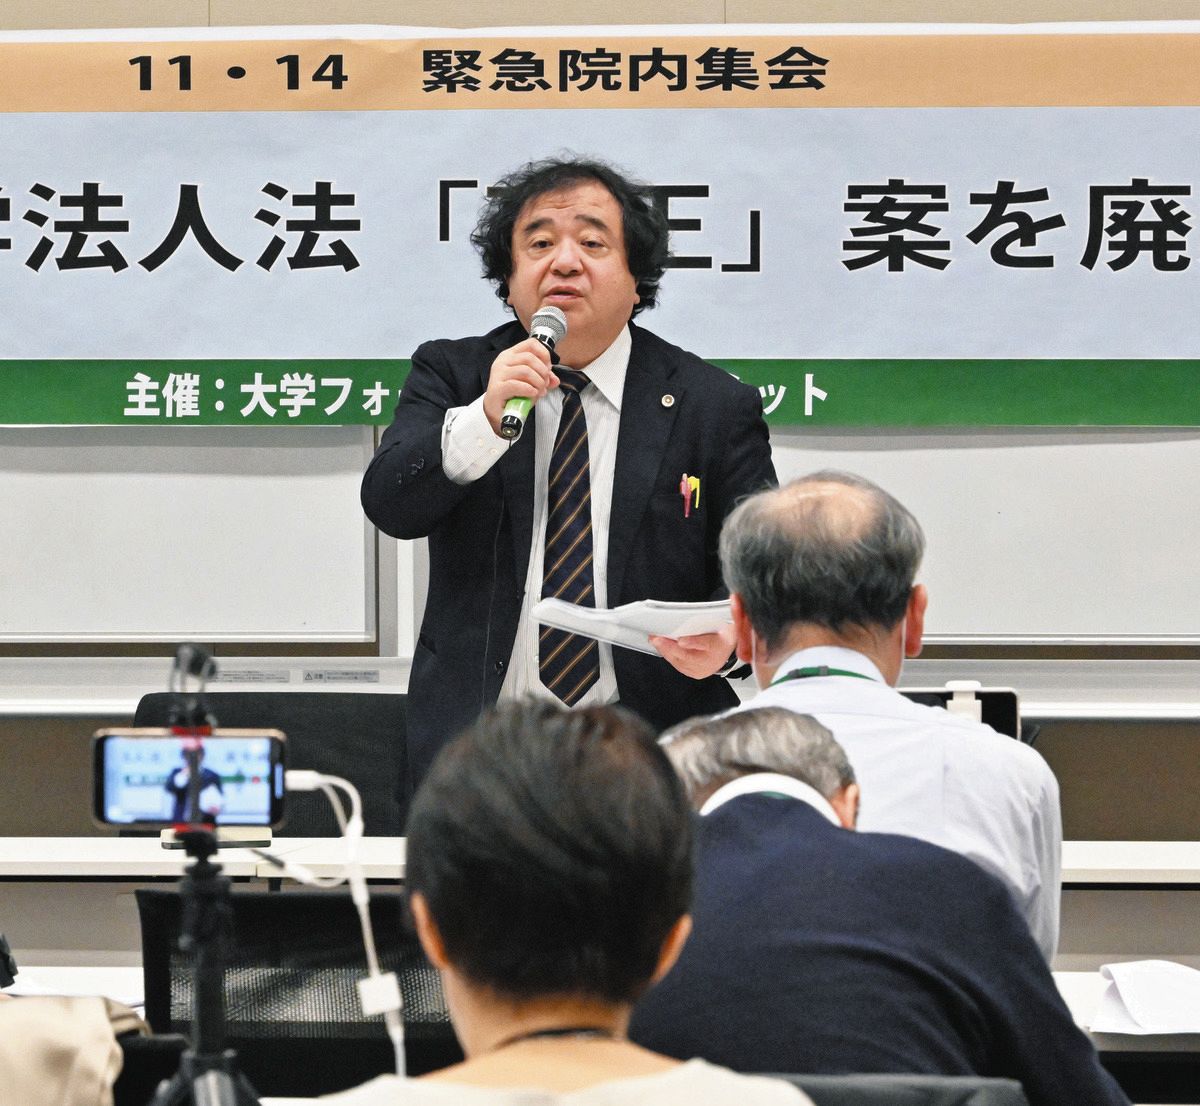 国立大学法人法の改正案に反対する、弁護士の指宿昭一さん＝14日、東京・永田町の衆院第2議員会館で